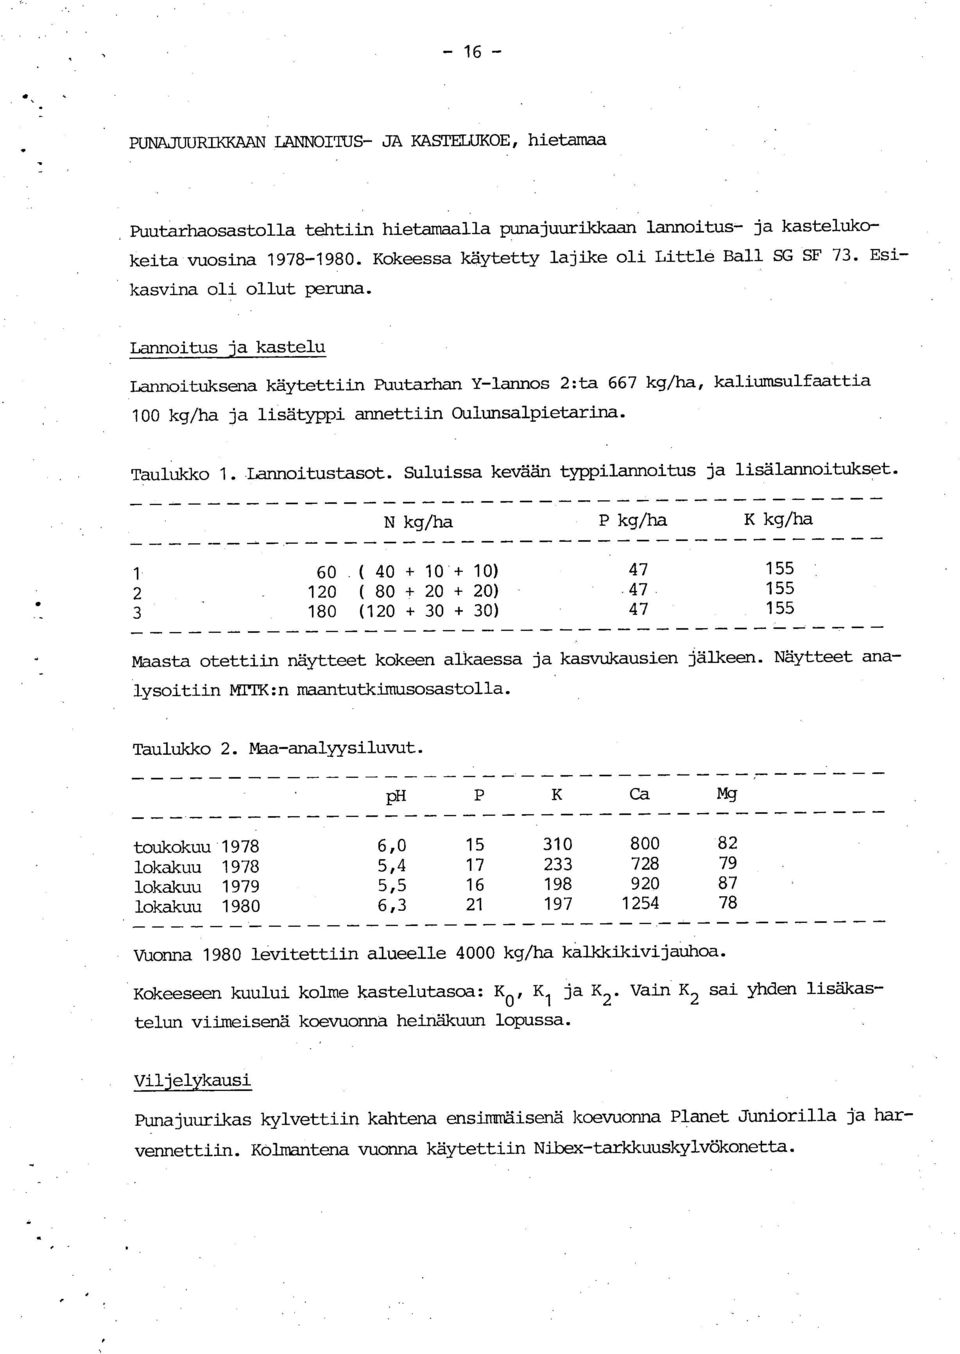 Lannoitus ja kastelu Lannoituksena käytettiin Puutarhan Y-lannos 2: ta 667 kg/ha, kaliumsulfaattia 100 kg/ha ja lisätyppi annettiin Oulunsalpietarina. Taulukko 1. Iannoitustasot.